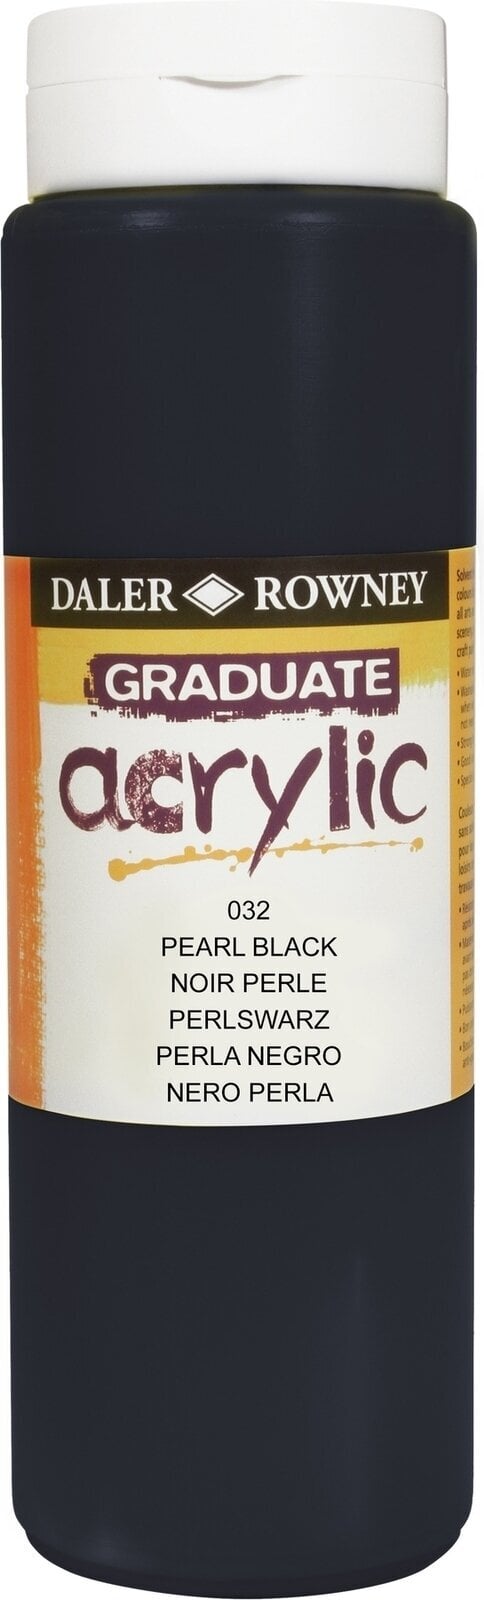 Akrylová barva Daler Rowney Graduate Akrylová barva Pearl Black 500 ml 1 ks